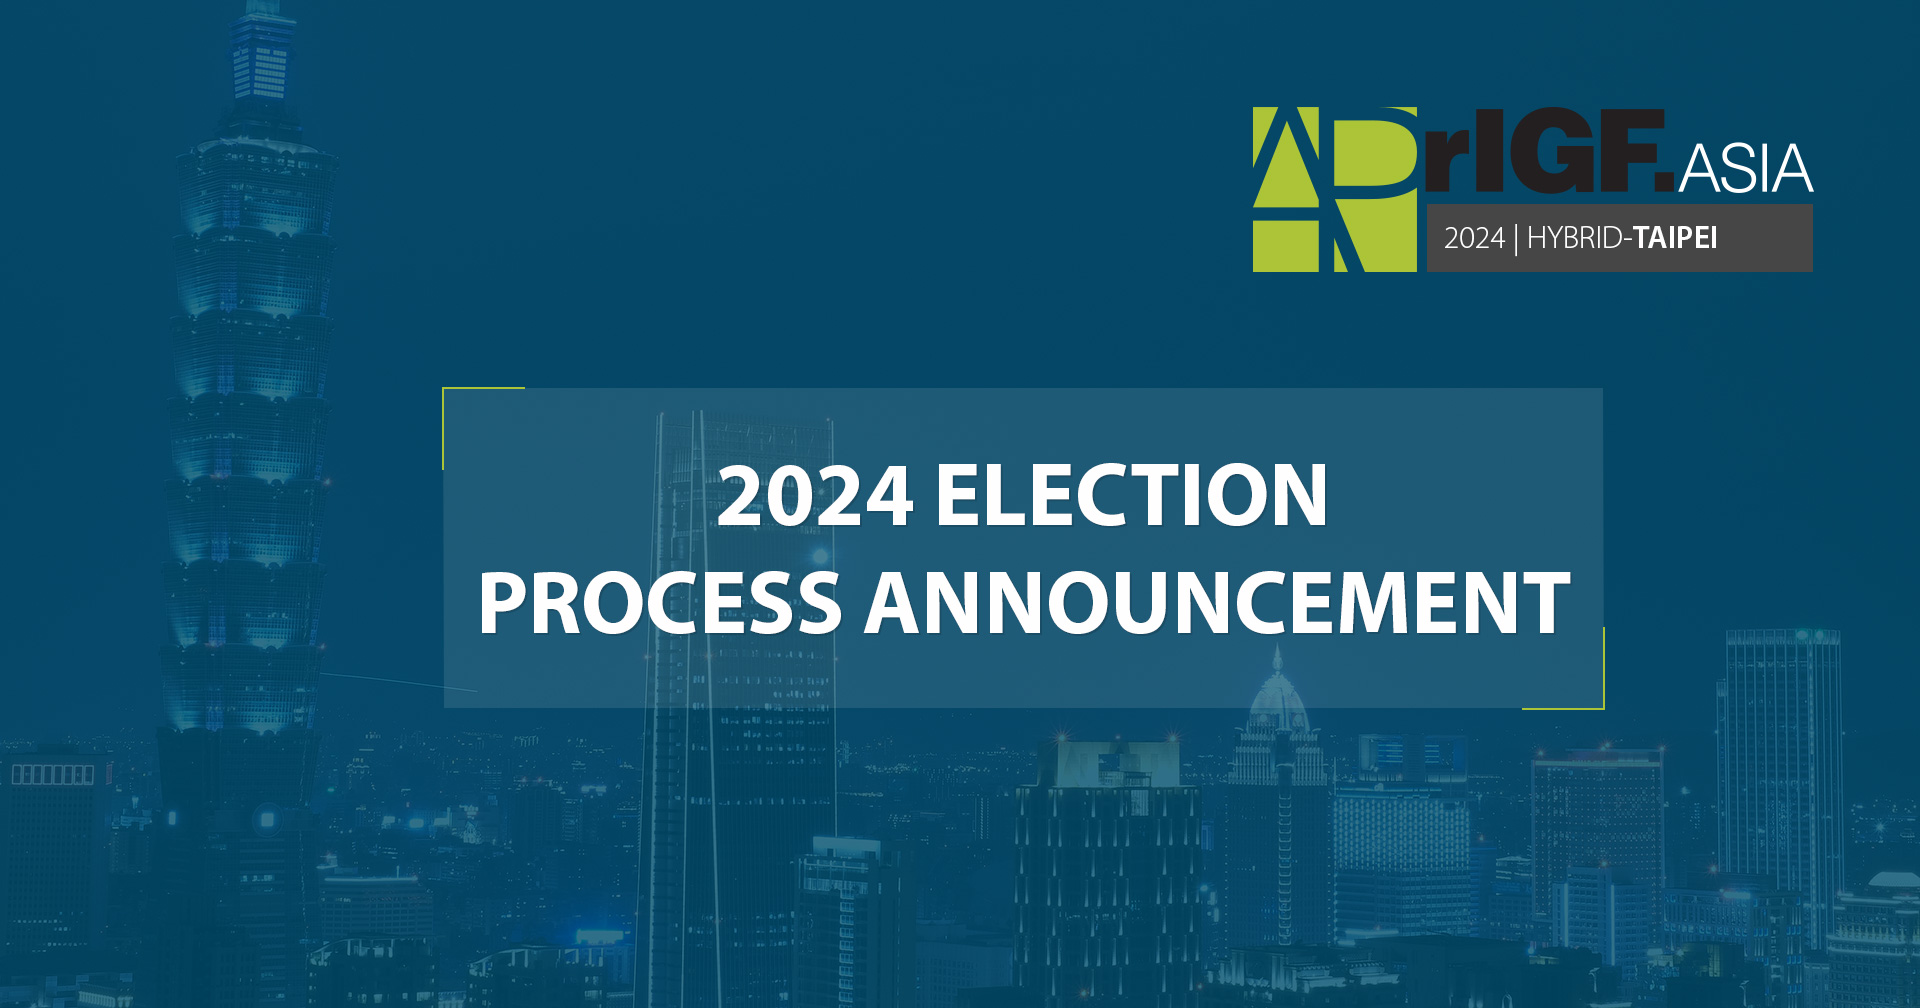 2024 APrIGF Election Process Announcement